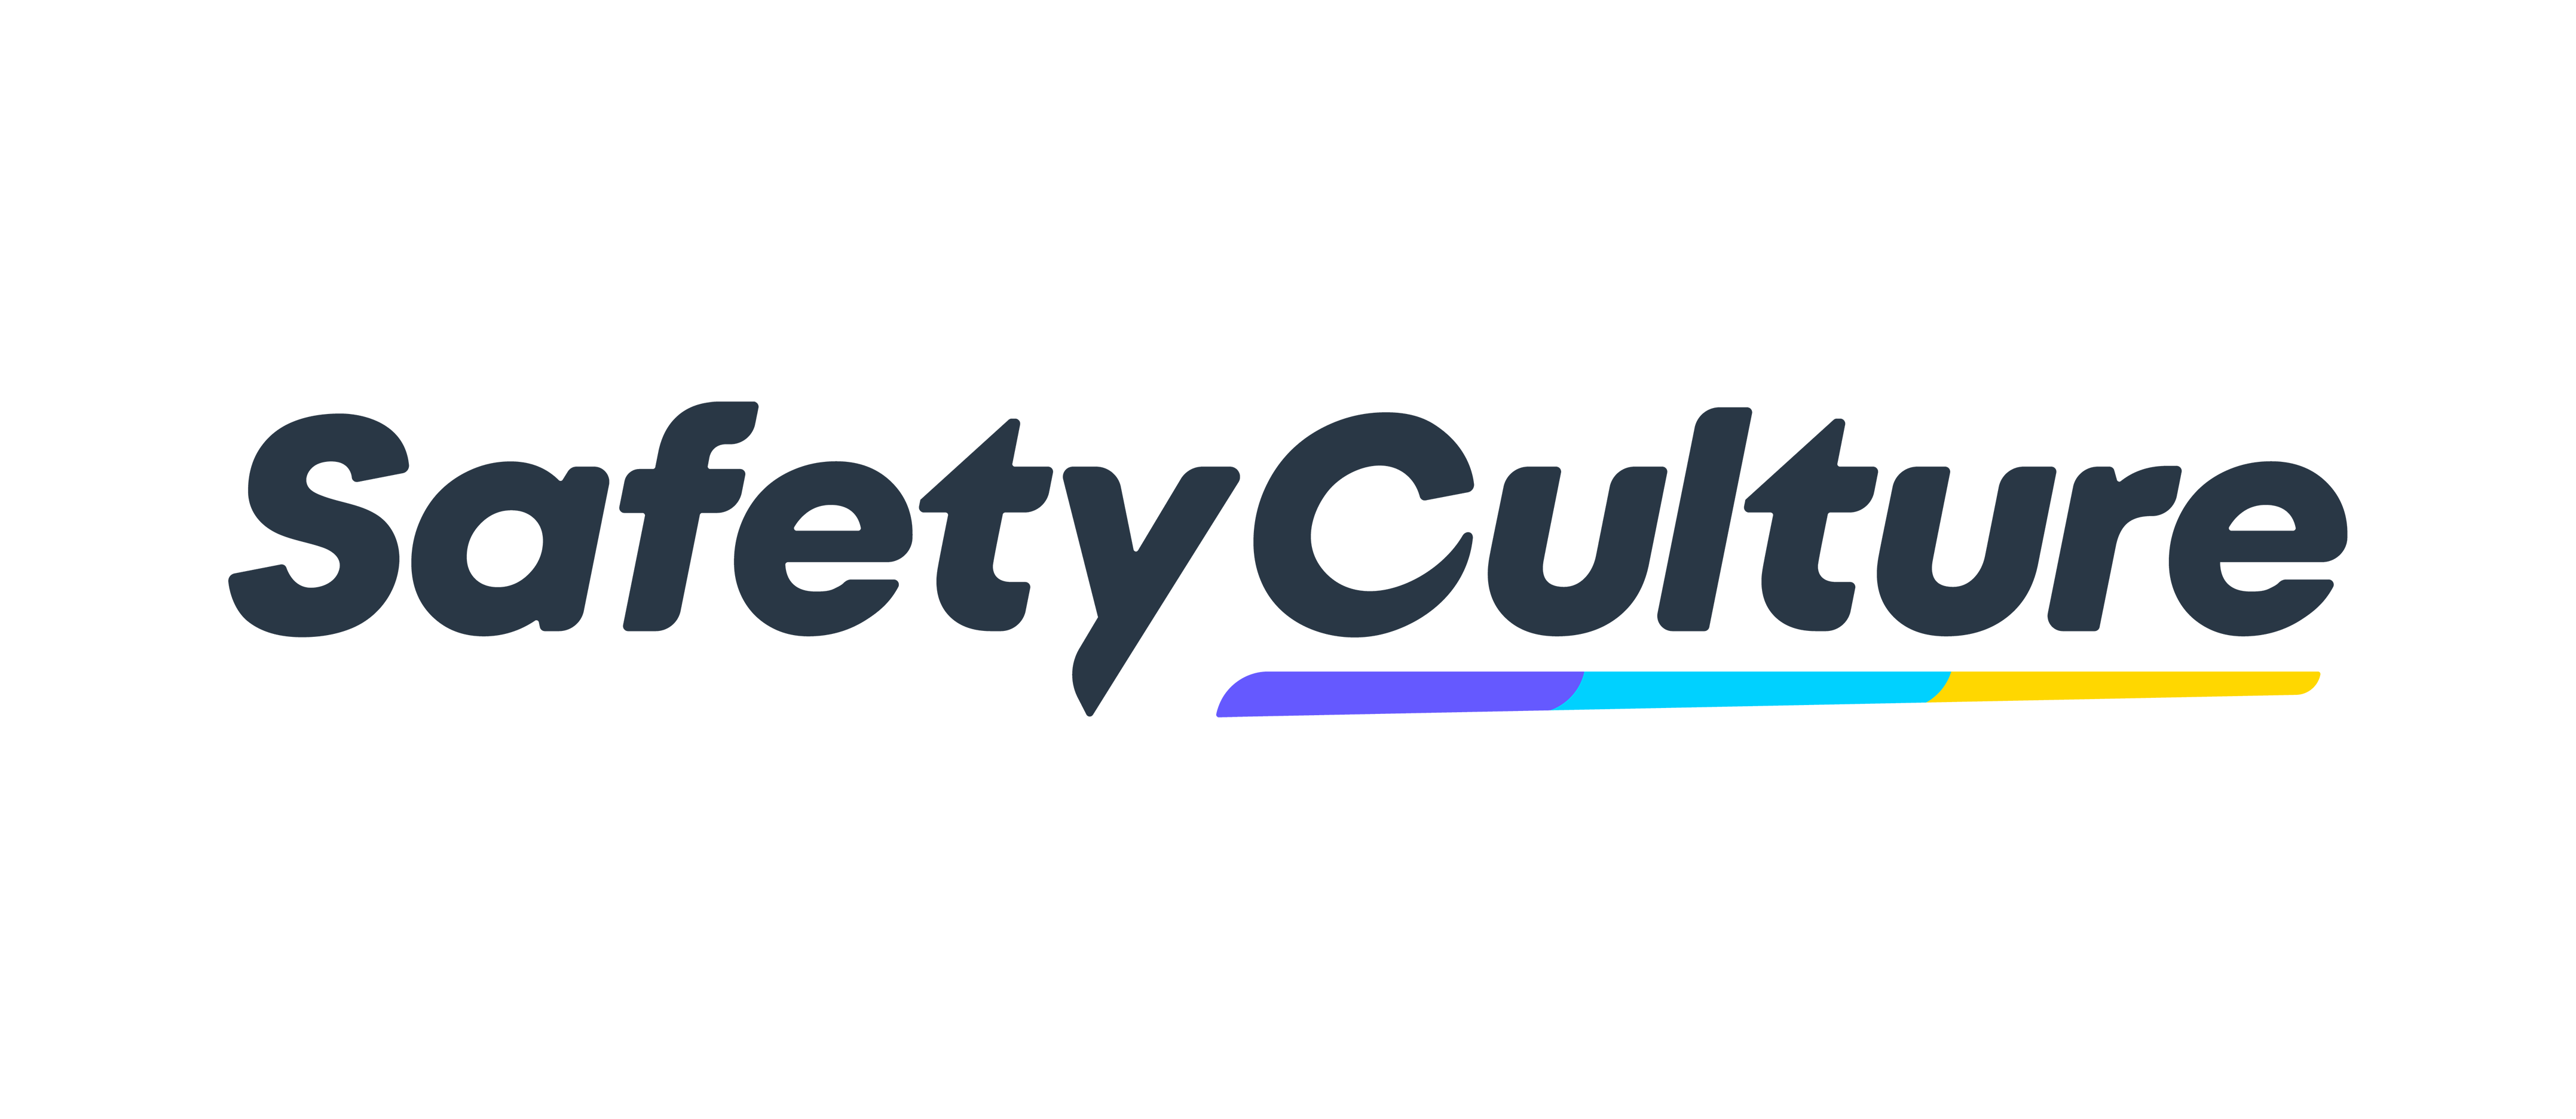 SafetyCulture (UK) Ltd